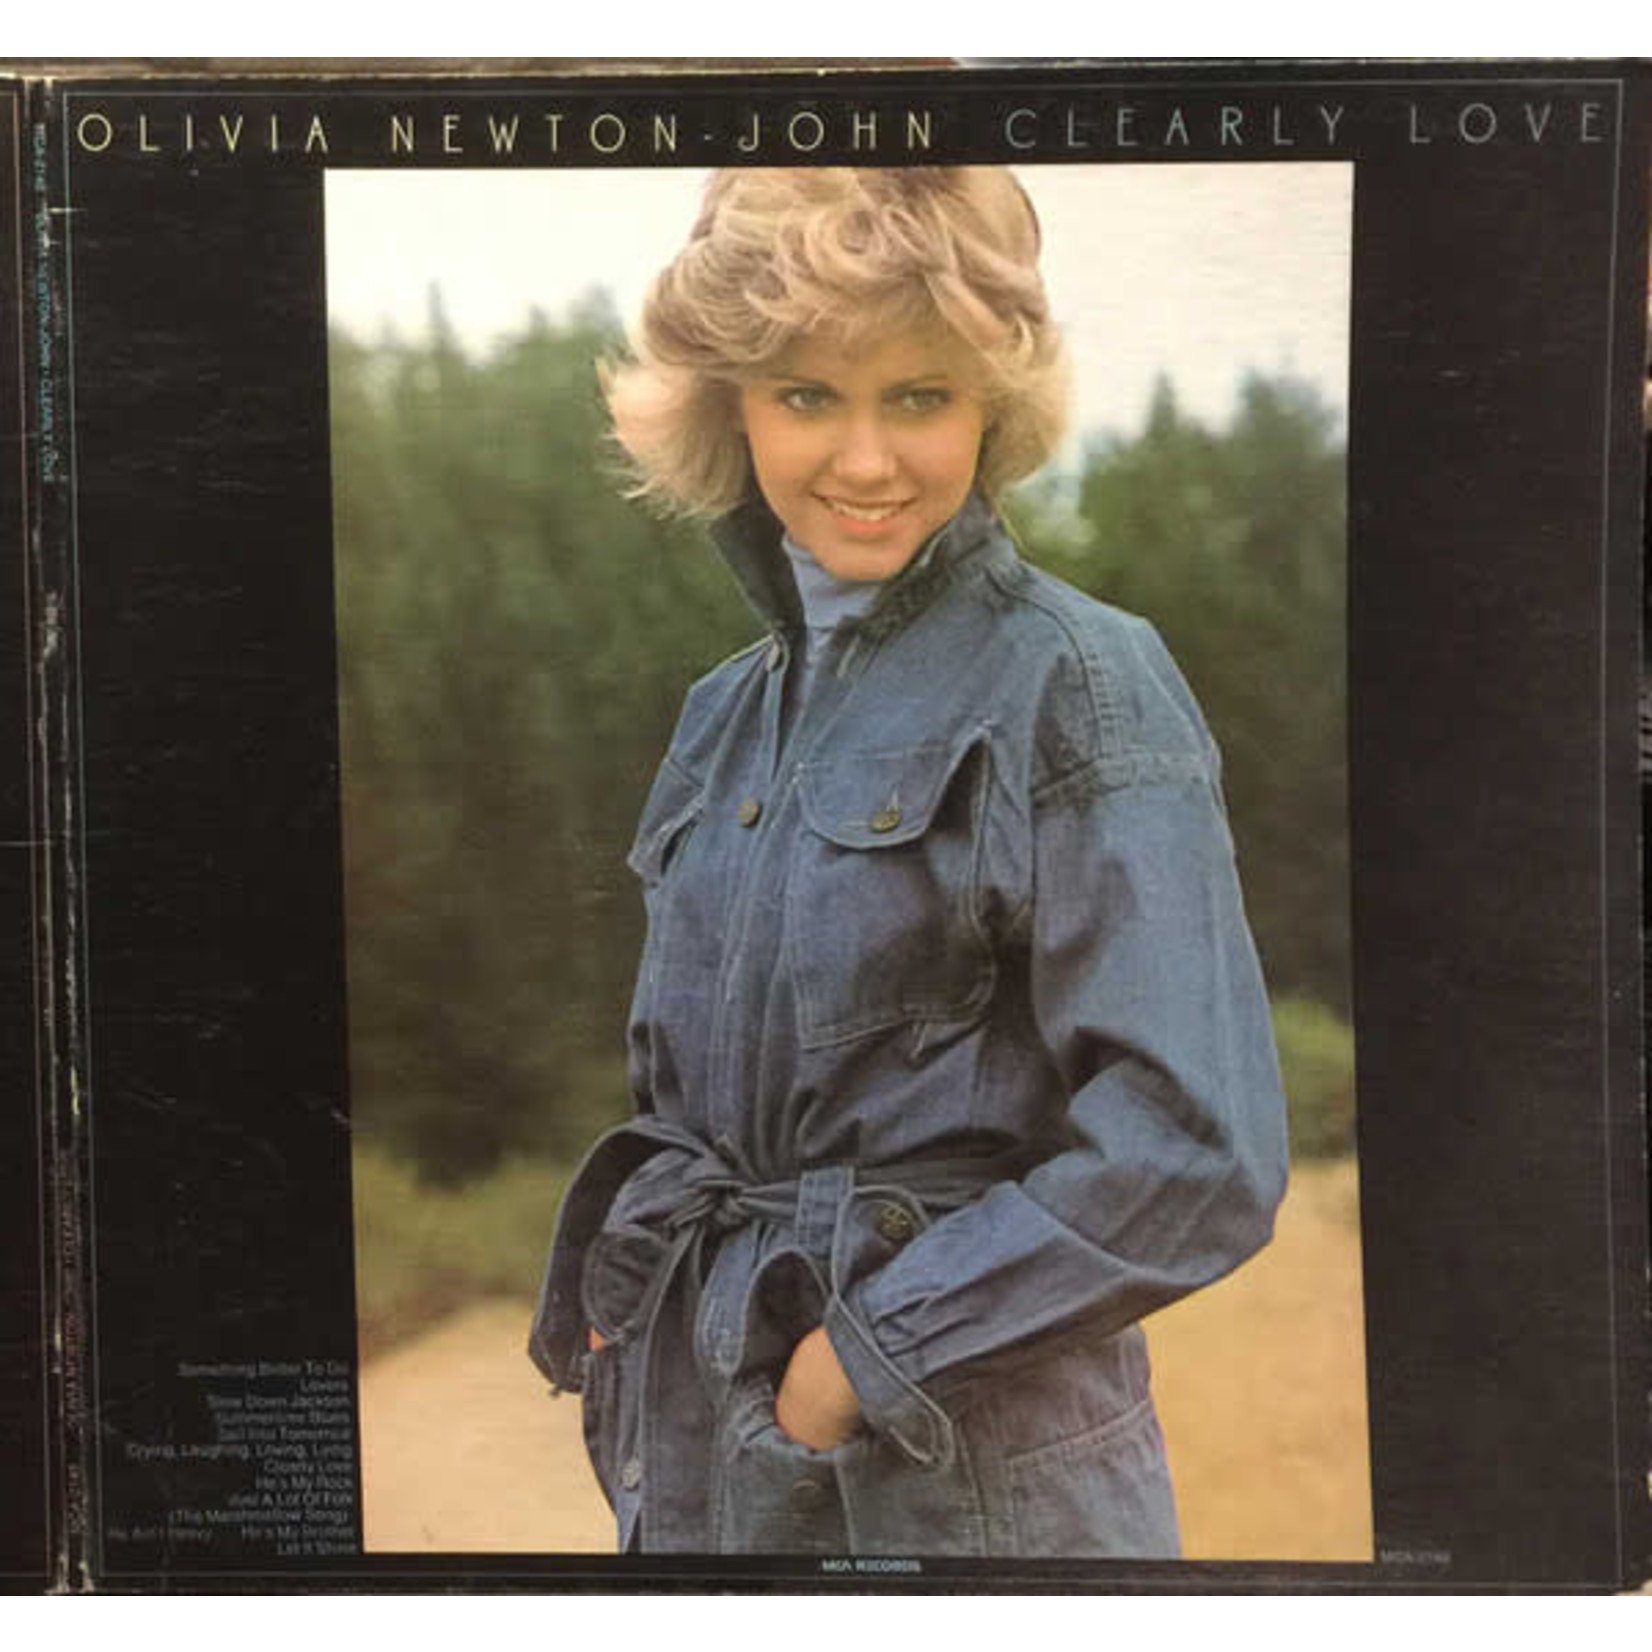 Olivia Newton-John Olivia Newton-John – Clearly Love (VG, 1975, LP, MCA Records – MCA- 2148, Canada)